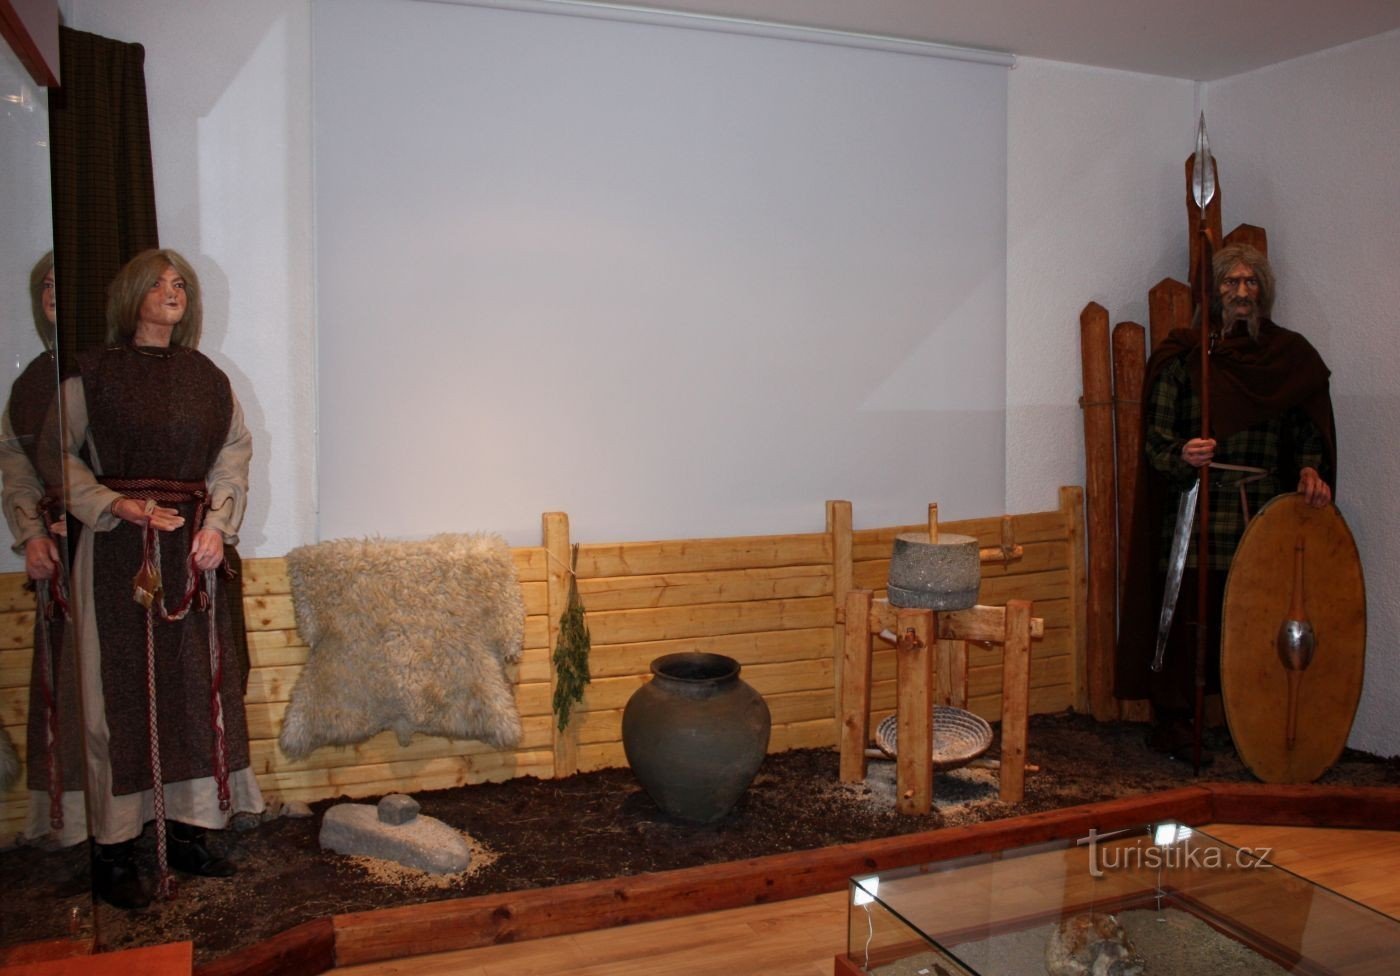 Bảo tàng người Celt ở Dobšice - thế giới của đàn ông và thế giới của phụ nữ